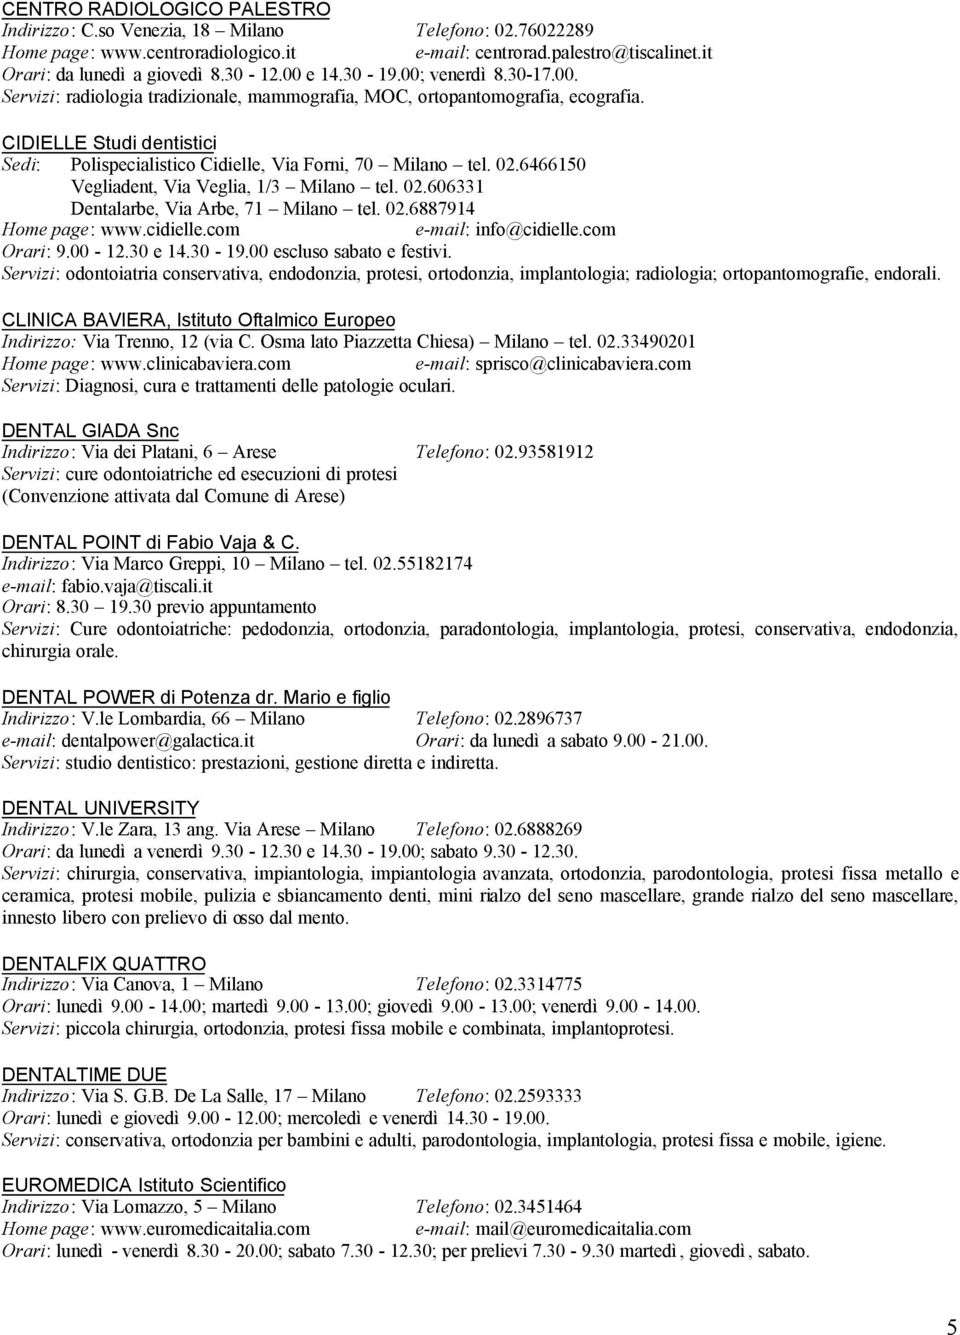 CIDIELLE Studi dentistici Sedi: Polispecialistico Cidielle, Via Forni, 70 Milano tel. 02.6466150 Vegliadent, Via Veglia, 1/3 Milano tel. 02.606331 Dentalarbe, Via Arbe, 71 Milano tel. 02.6887914 Home page: www.